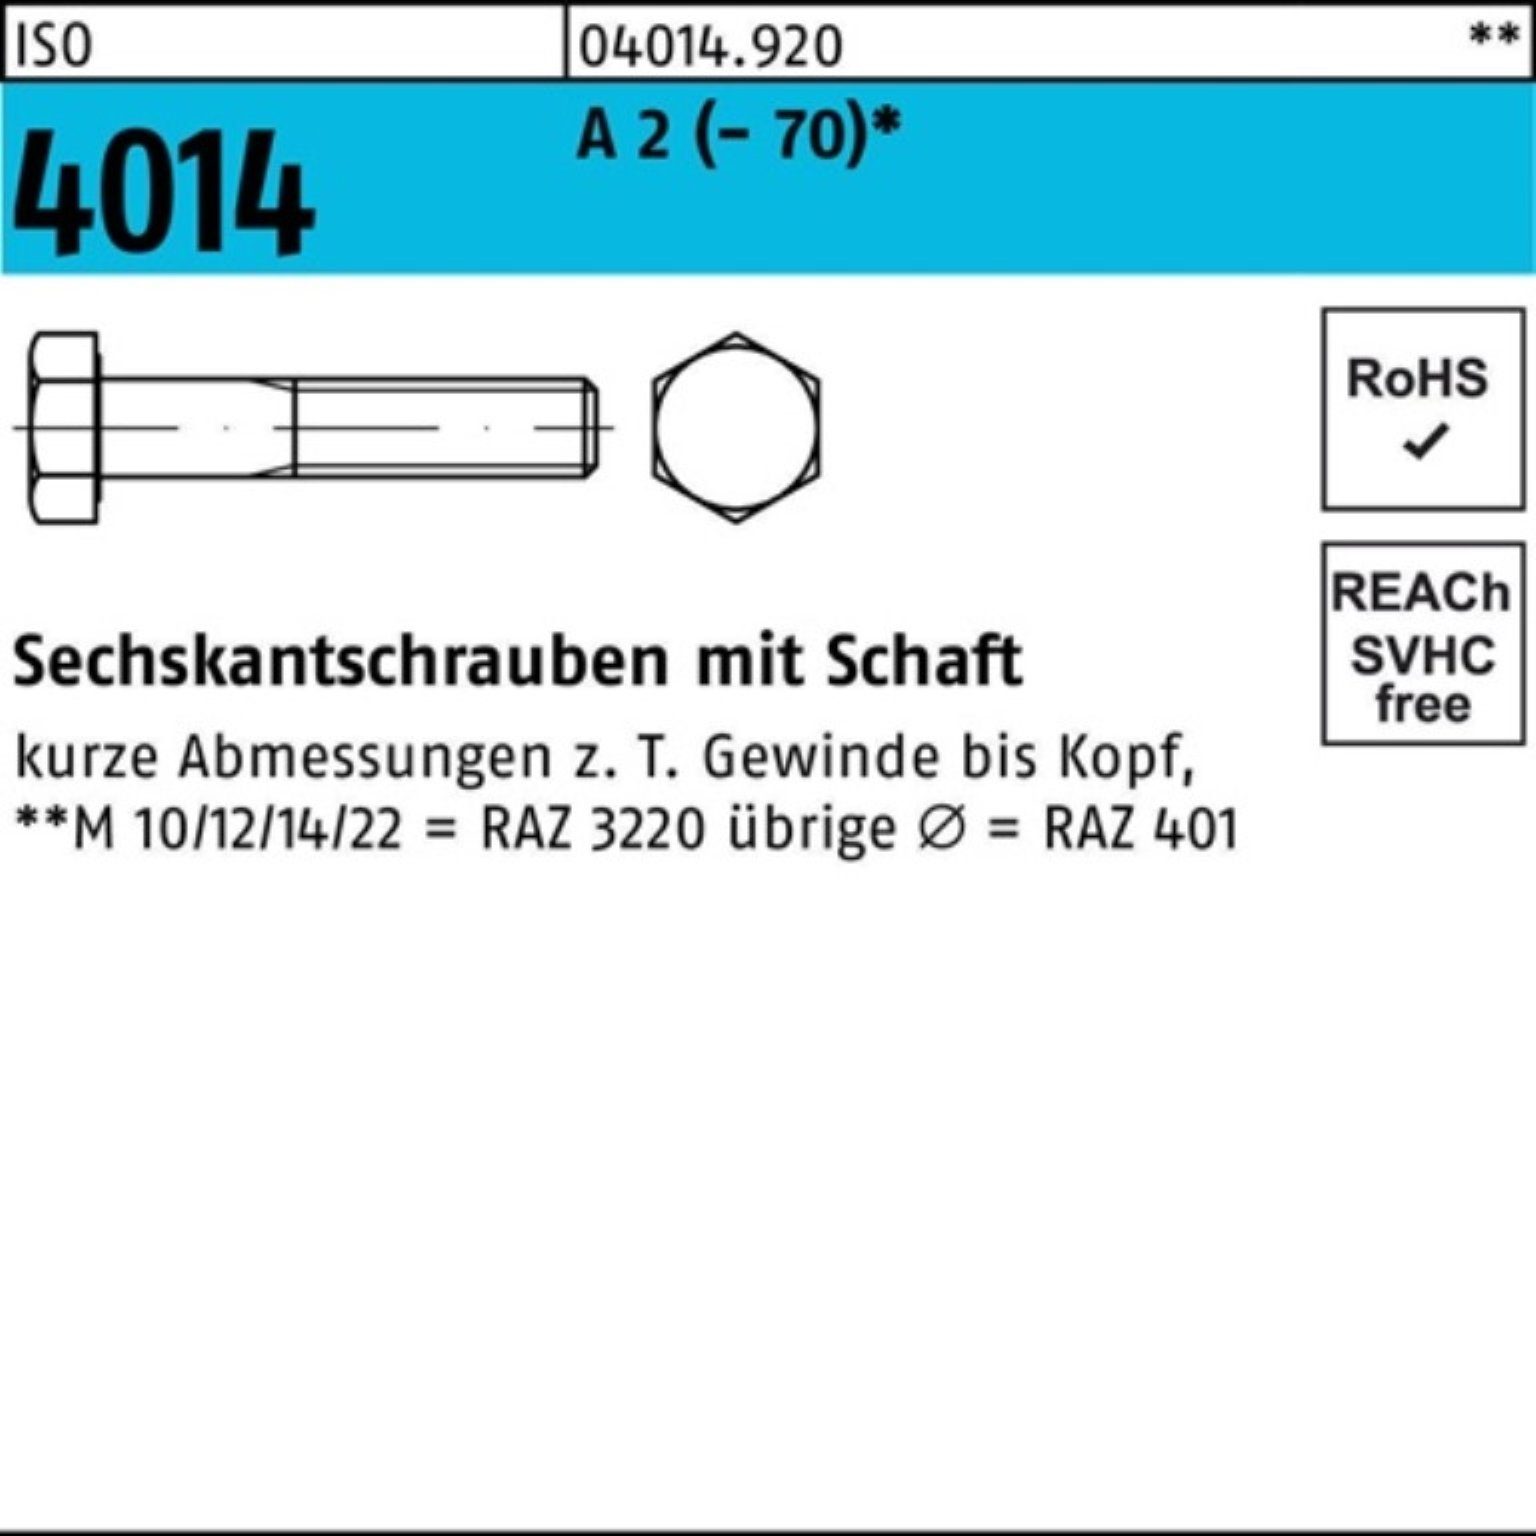 Bufab Sechskantschraube 100er Pack Sechskantschraube ISO 4014 Schaft M8x 200 A 2 (70) 25 St